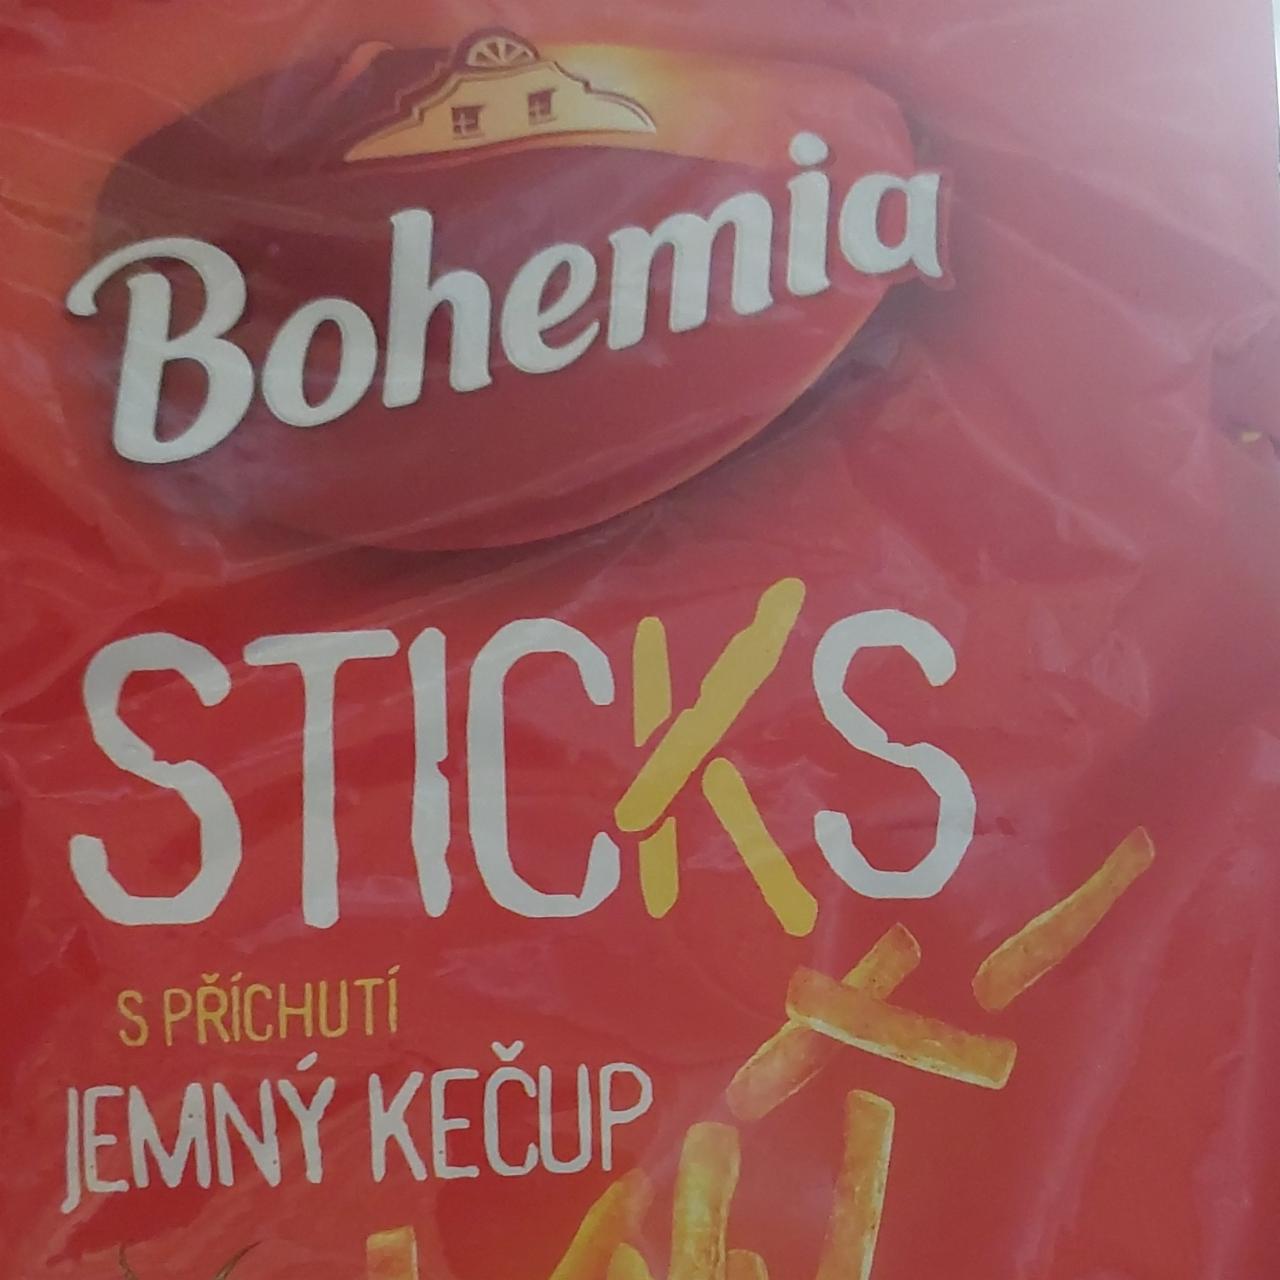 Fotografie - Bohemia sticks jemný kečup